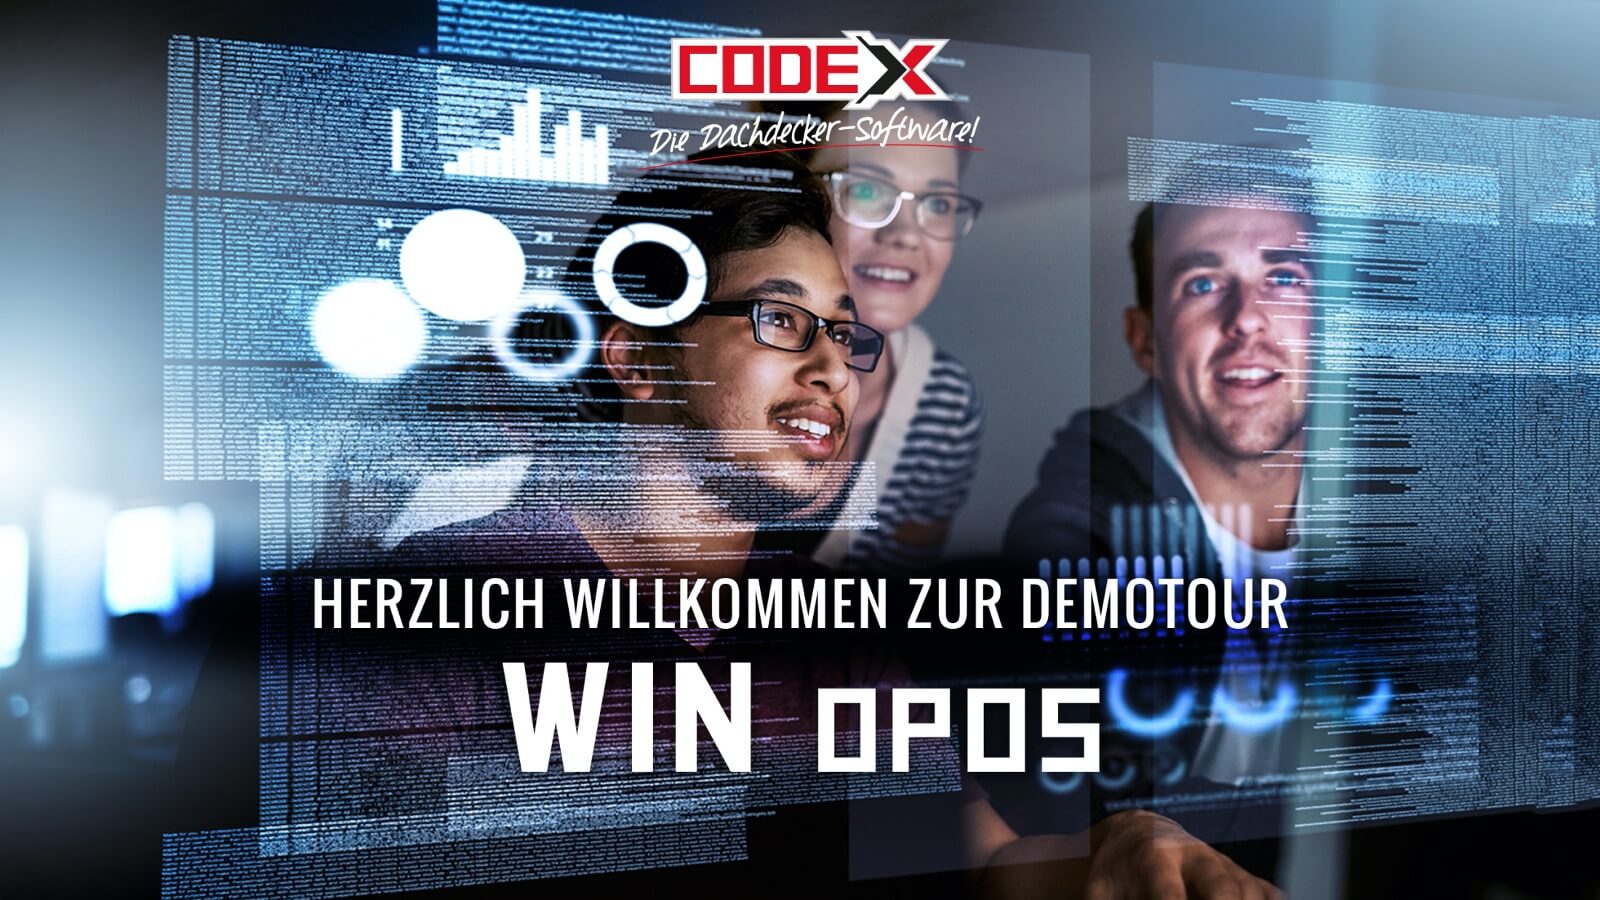 CODEX_WIN_OPOS_Folie01